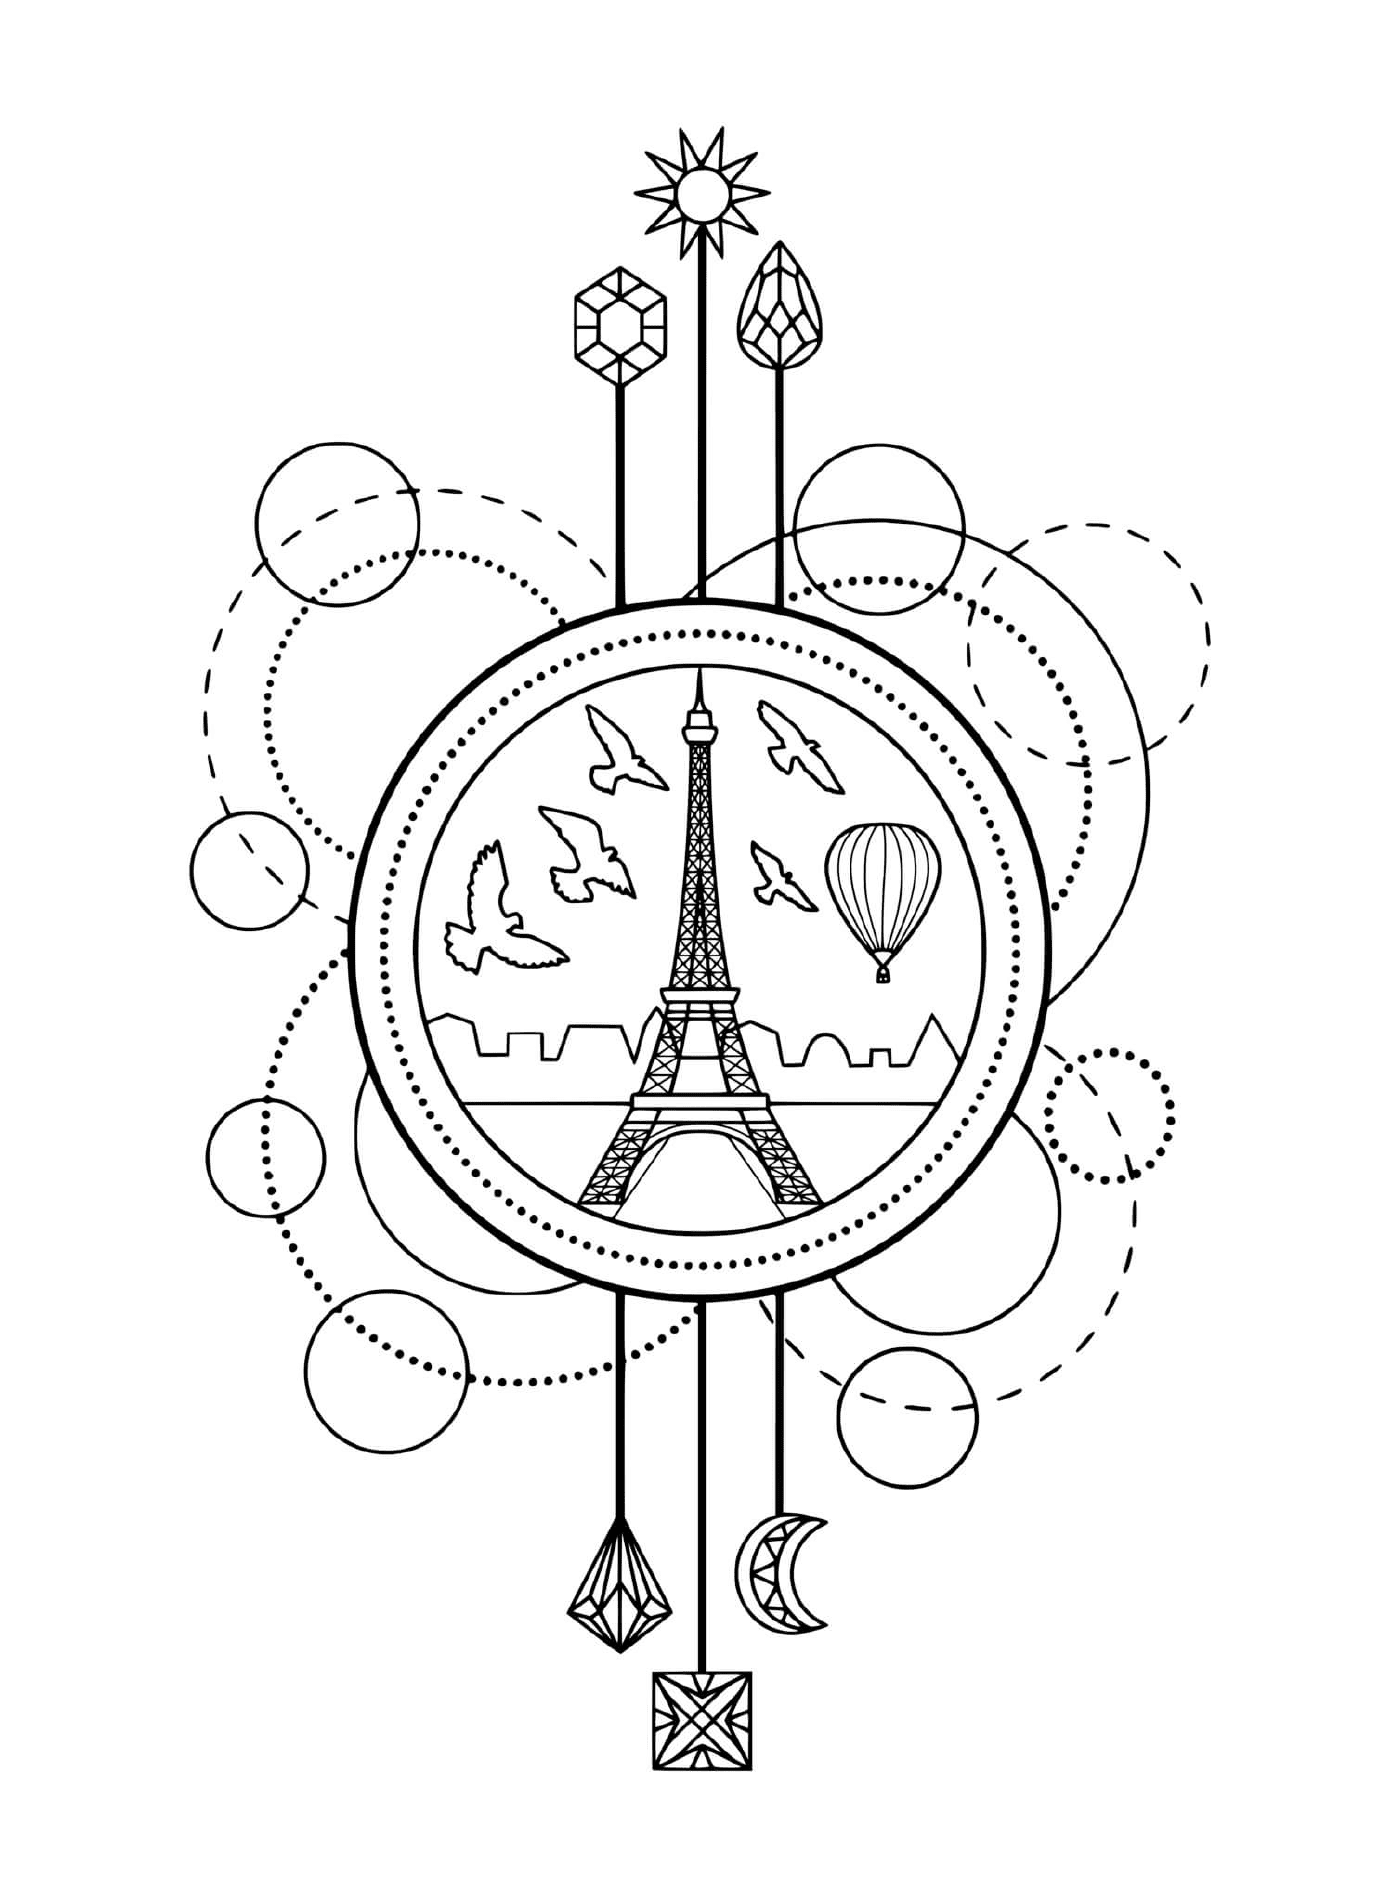  Эйфелева башня и воздушный шар, Париж 